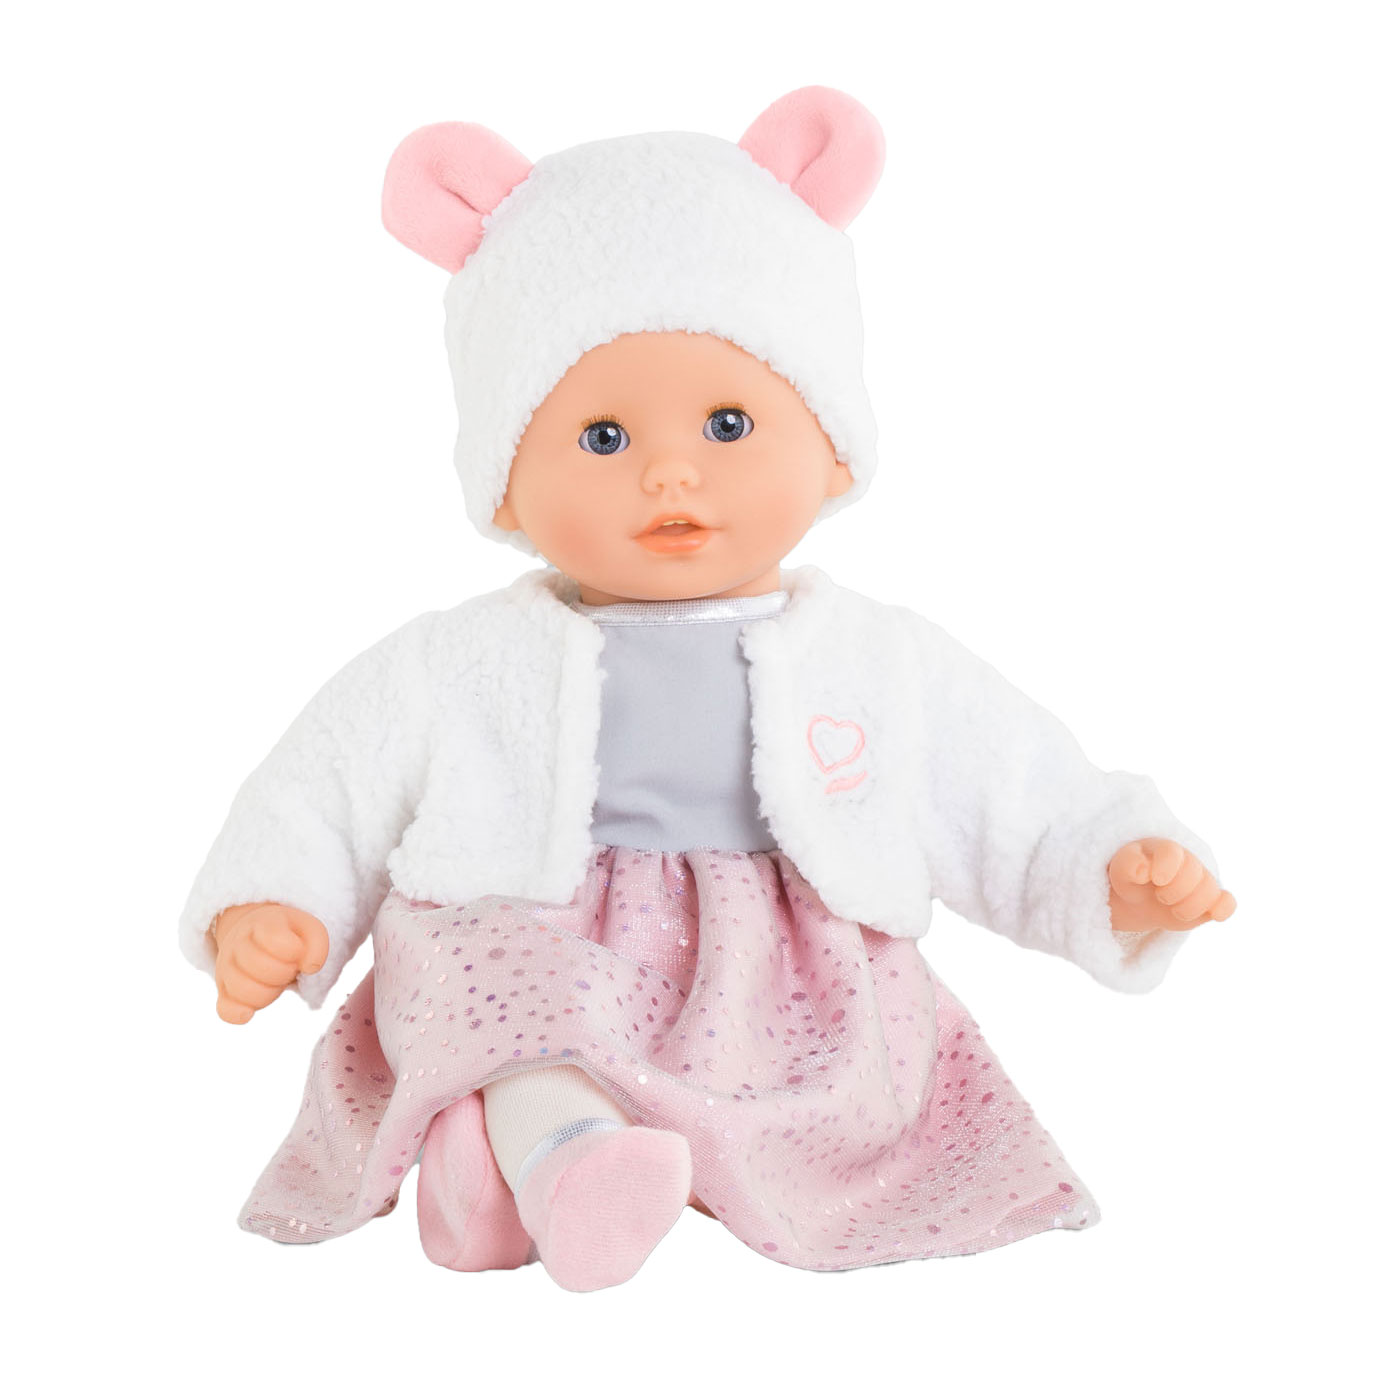 Corolle Bébé Mon Premier Lit à Bascule Baby Doll Cradle Accessoire Poupon 